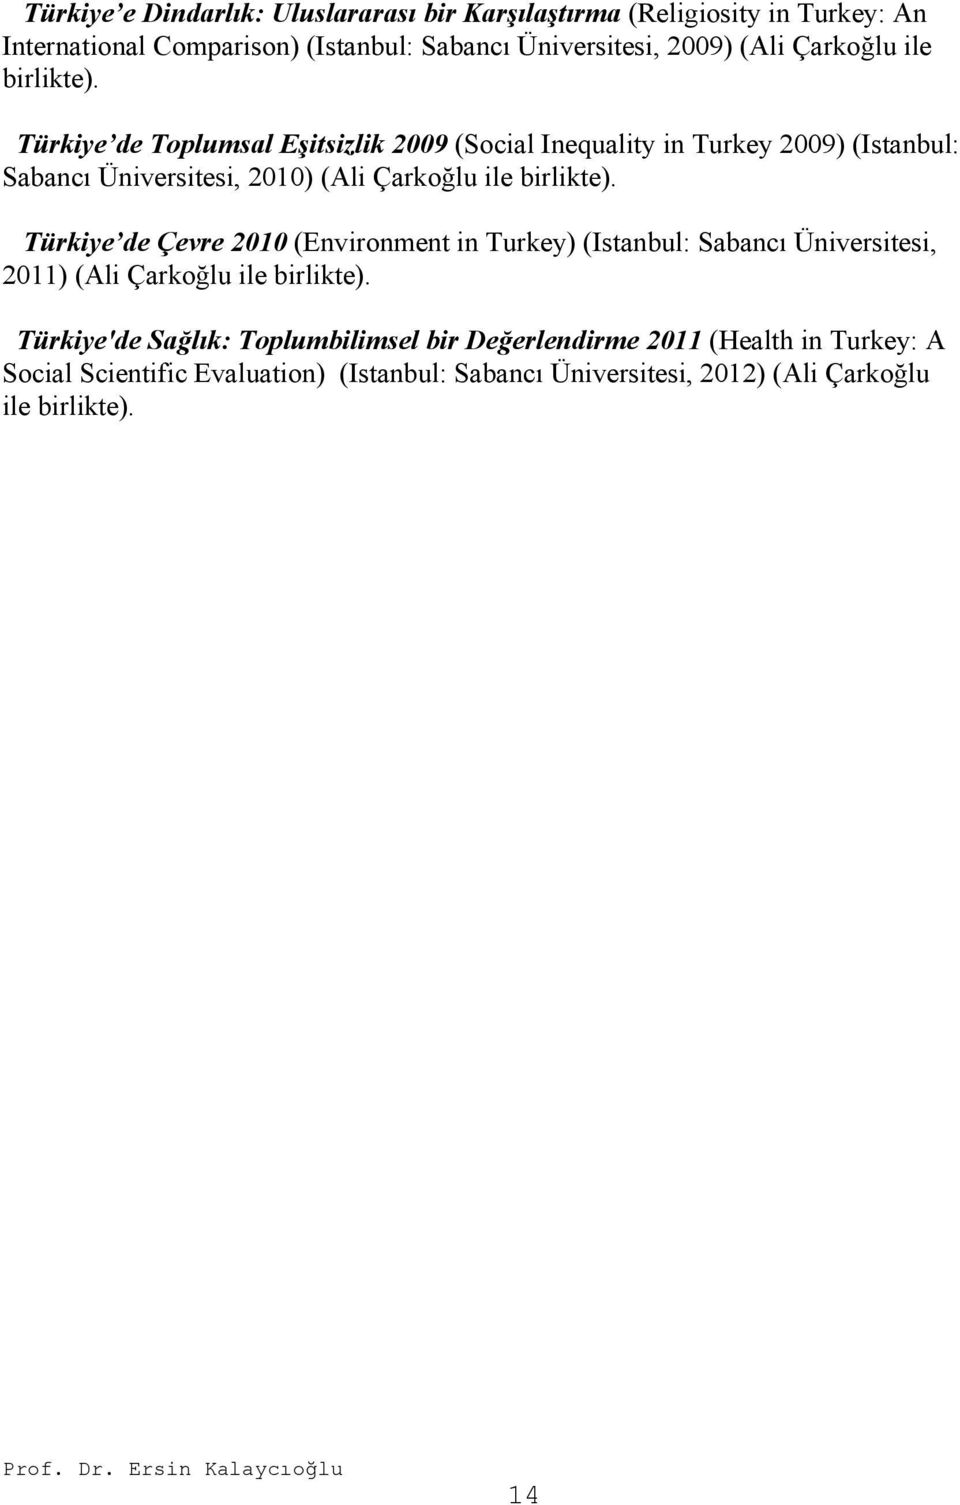 Türkiye de Toplumsal Eşitsizlik 2009 (Social Inequality in Turkey 2009) (Istanbul: Sabancı Üniversitesi, 2010) (Ali  Türkiye de Çevre 2010 (Environment